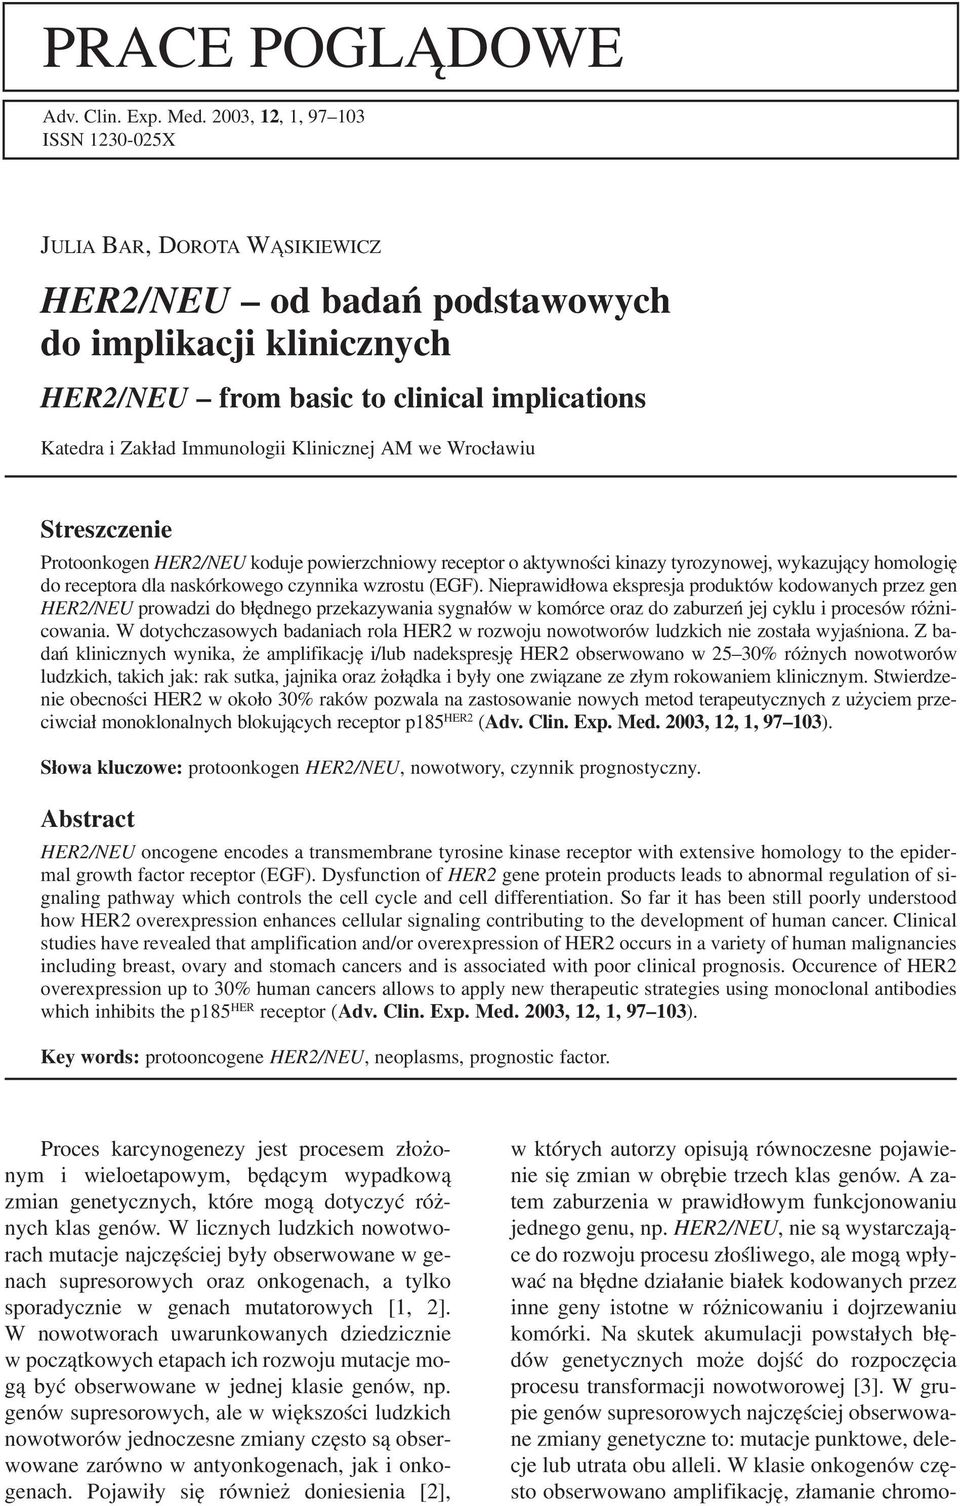 Klinicznej AM we Wrocławiu Streszczenie Protoonkogen HER2/NEU koduje powierzchniowy receptor o aktywności kinazy tyrozynowej, wykazujący homologię do receptora dla naskórkowego czynnika wzrostu (EGF).